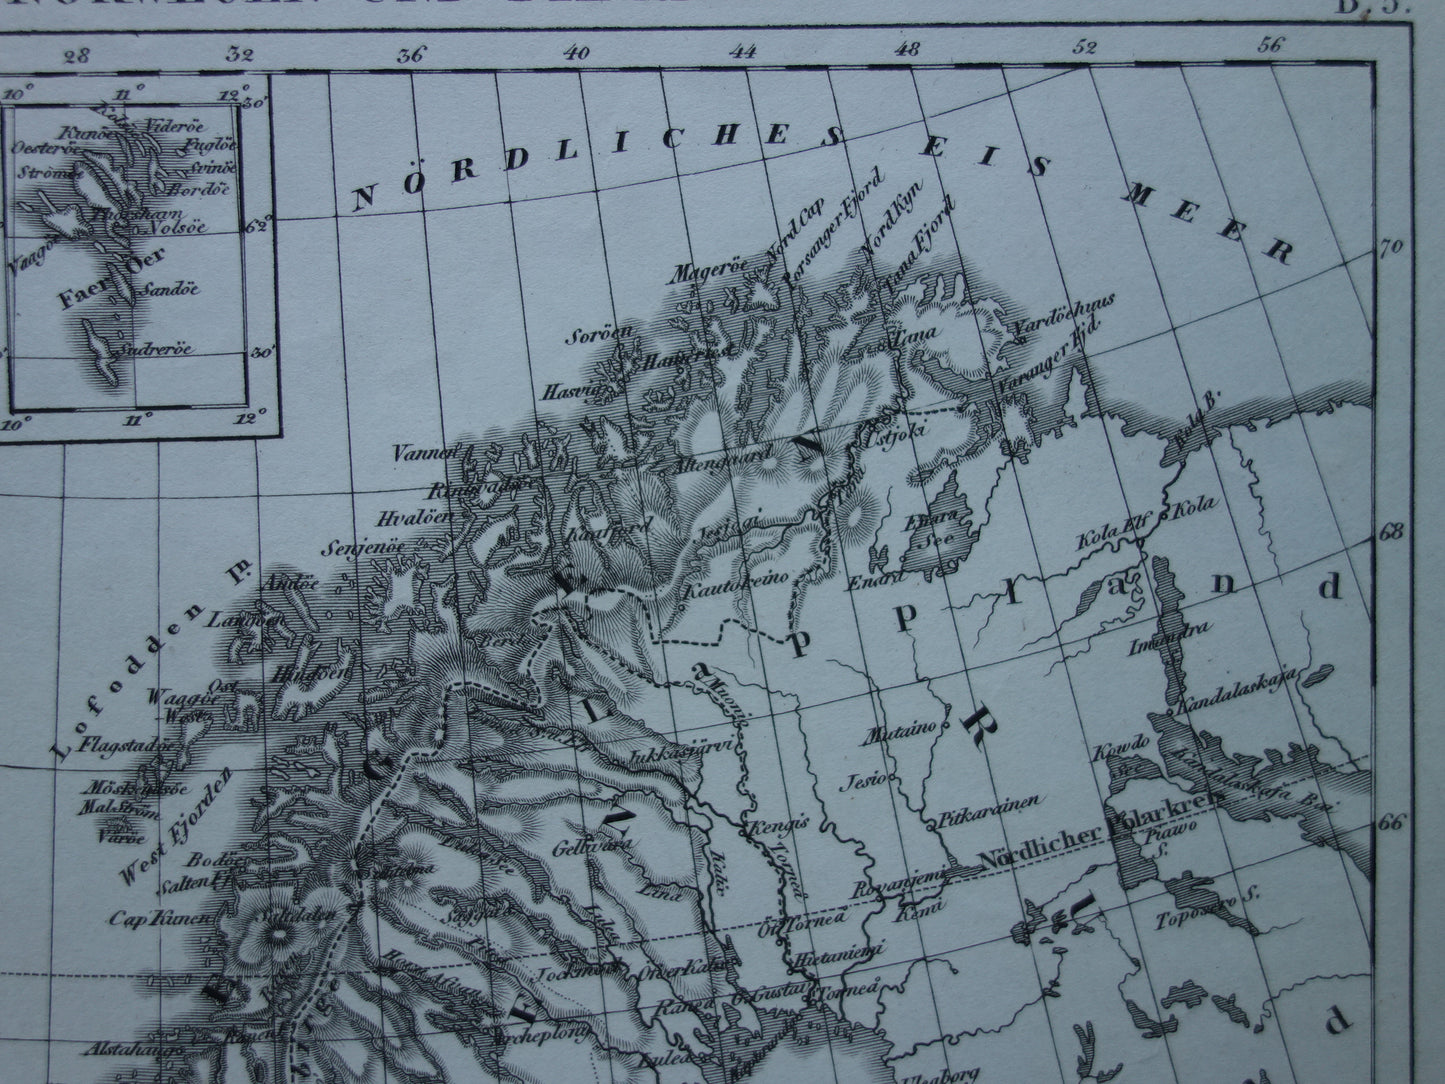 SCANDINAVIE antieke kaart van Zweden, Noorwegen en Denemarken 170+ jaar oude landkaart van Scandinavië  uit 1849 - originele vintage historische kaarten